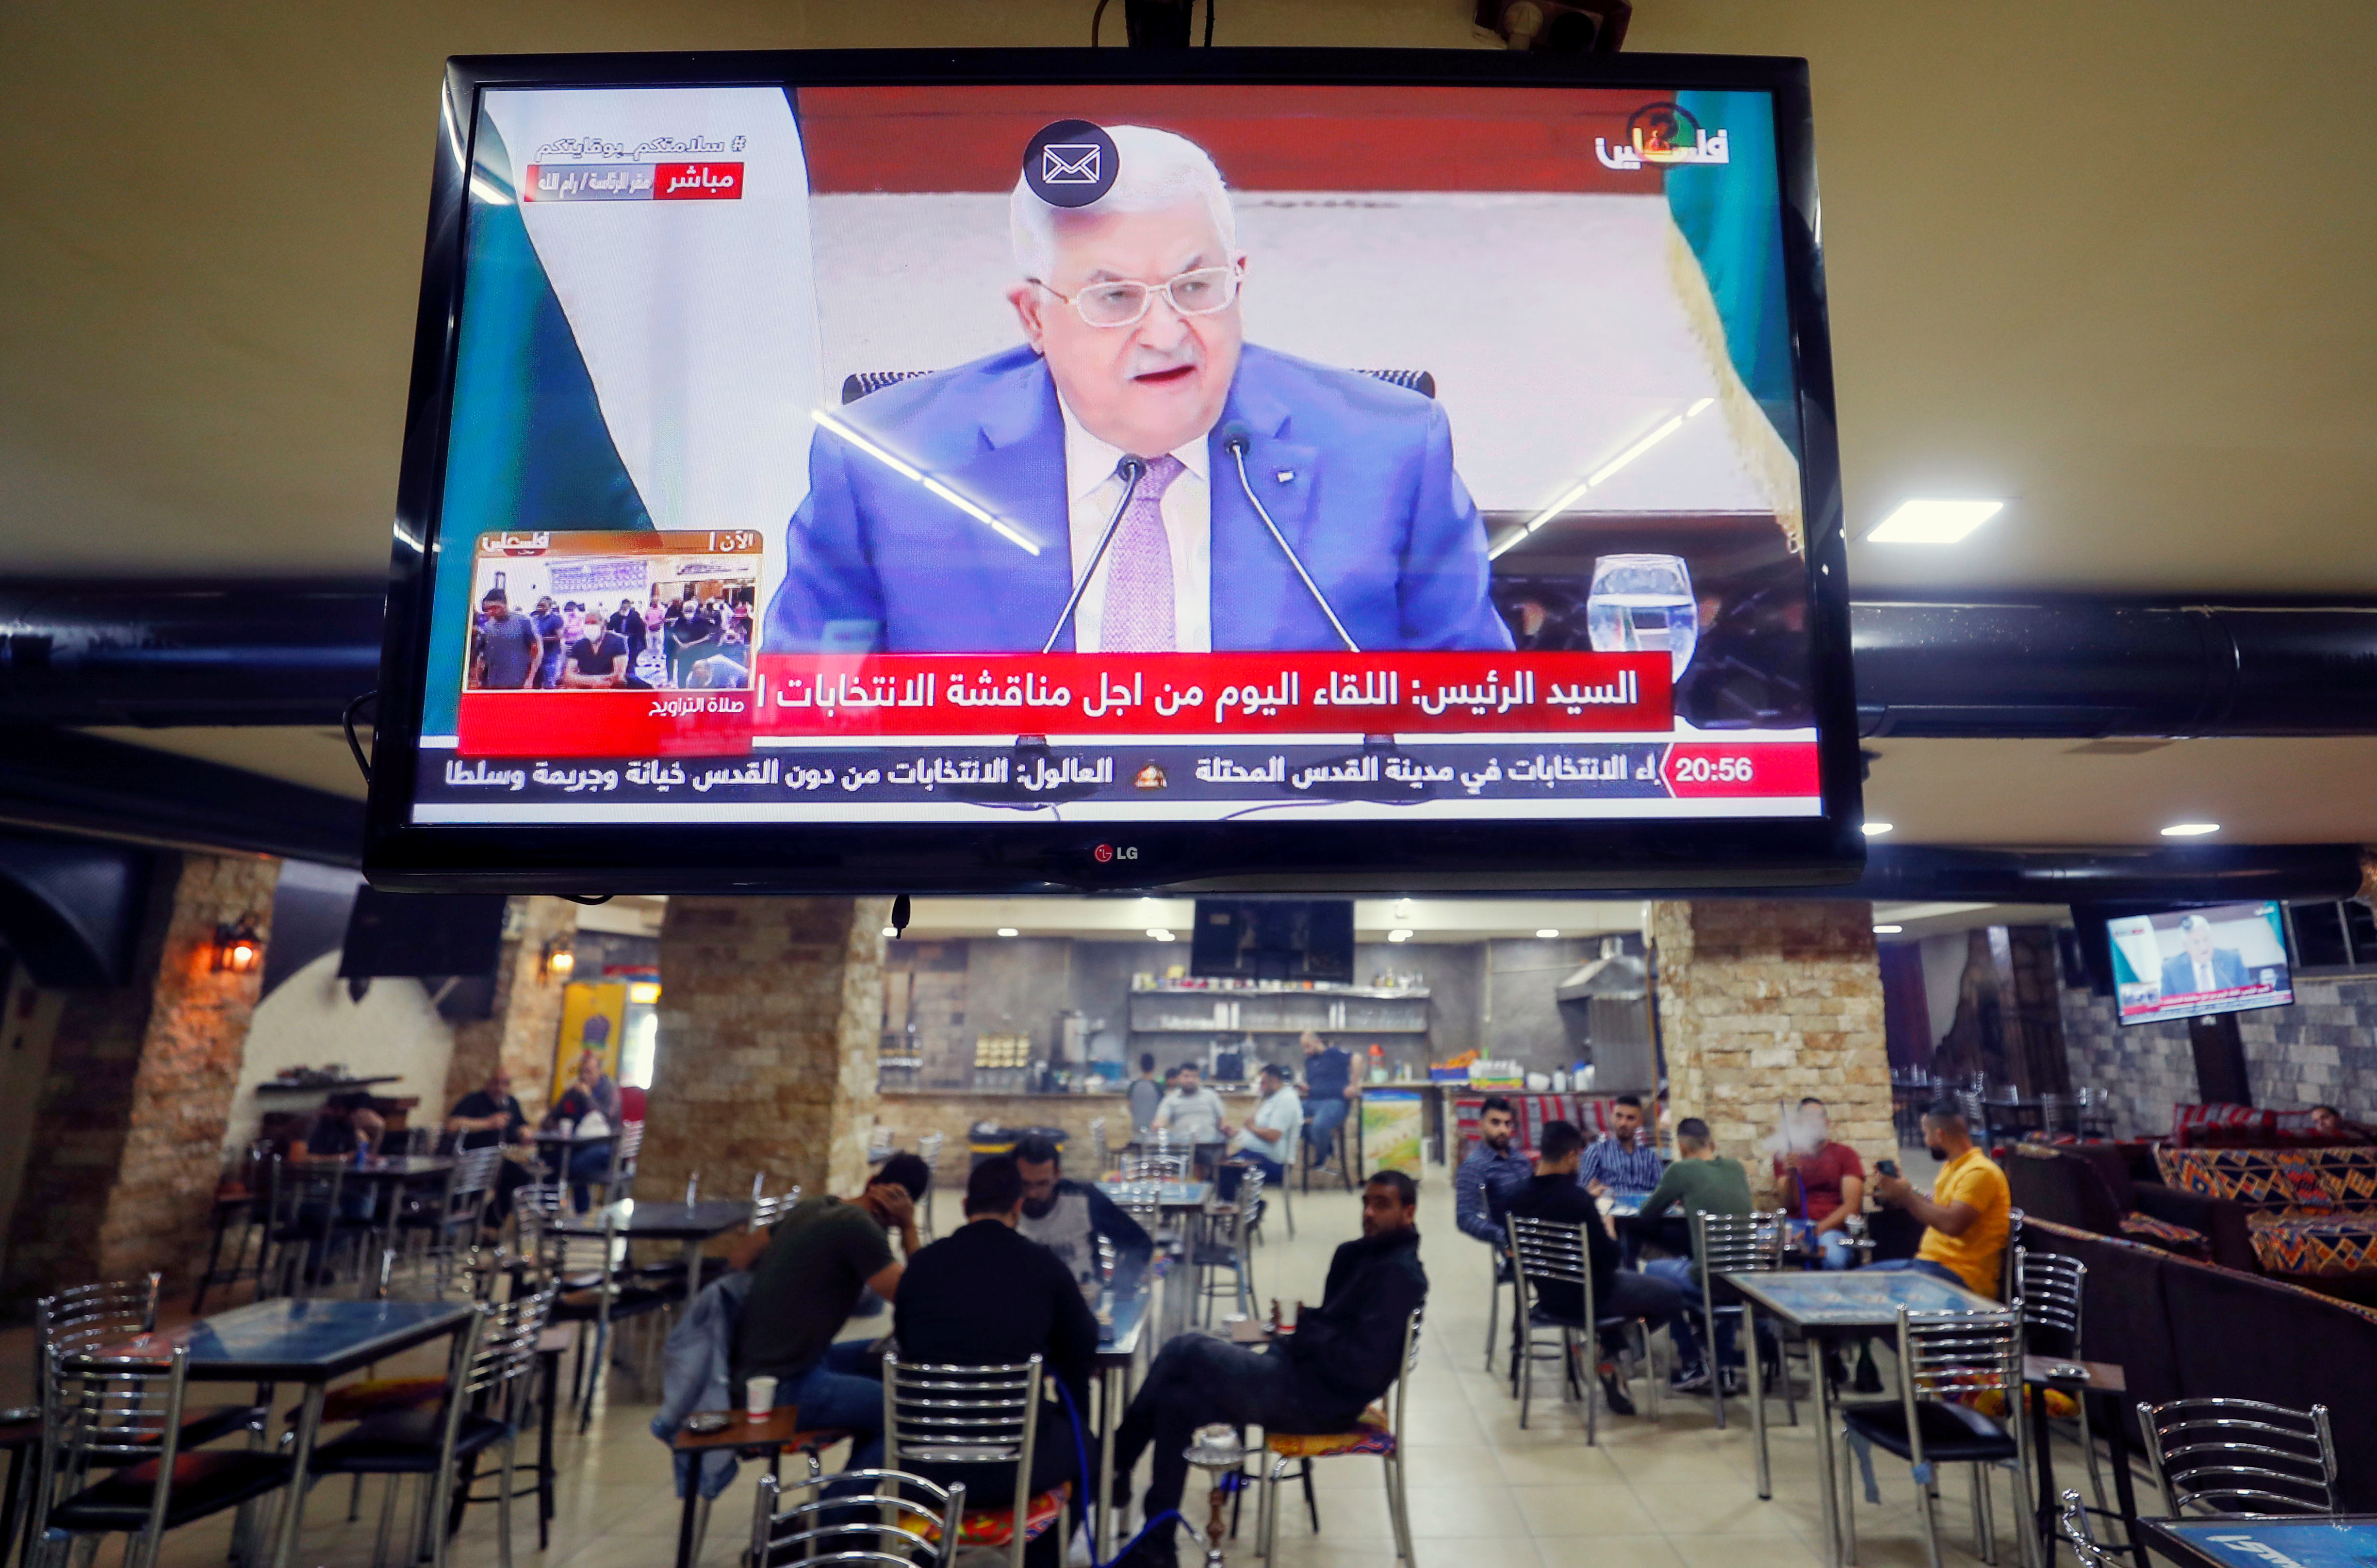 Una pantalla emite una alocucin del presidente de la autoridad palestina.